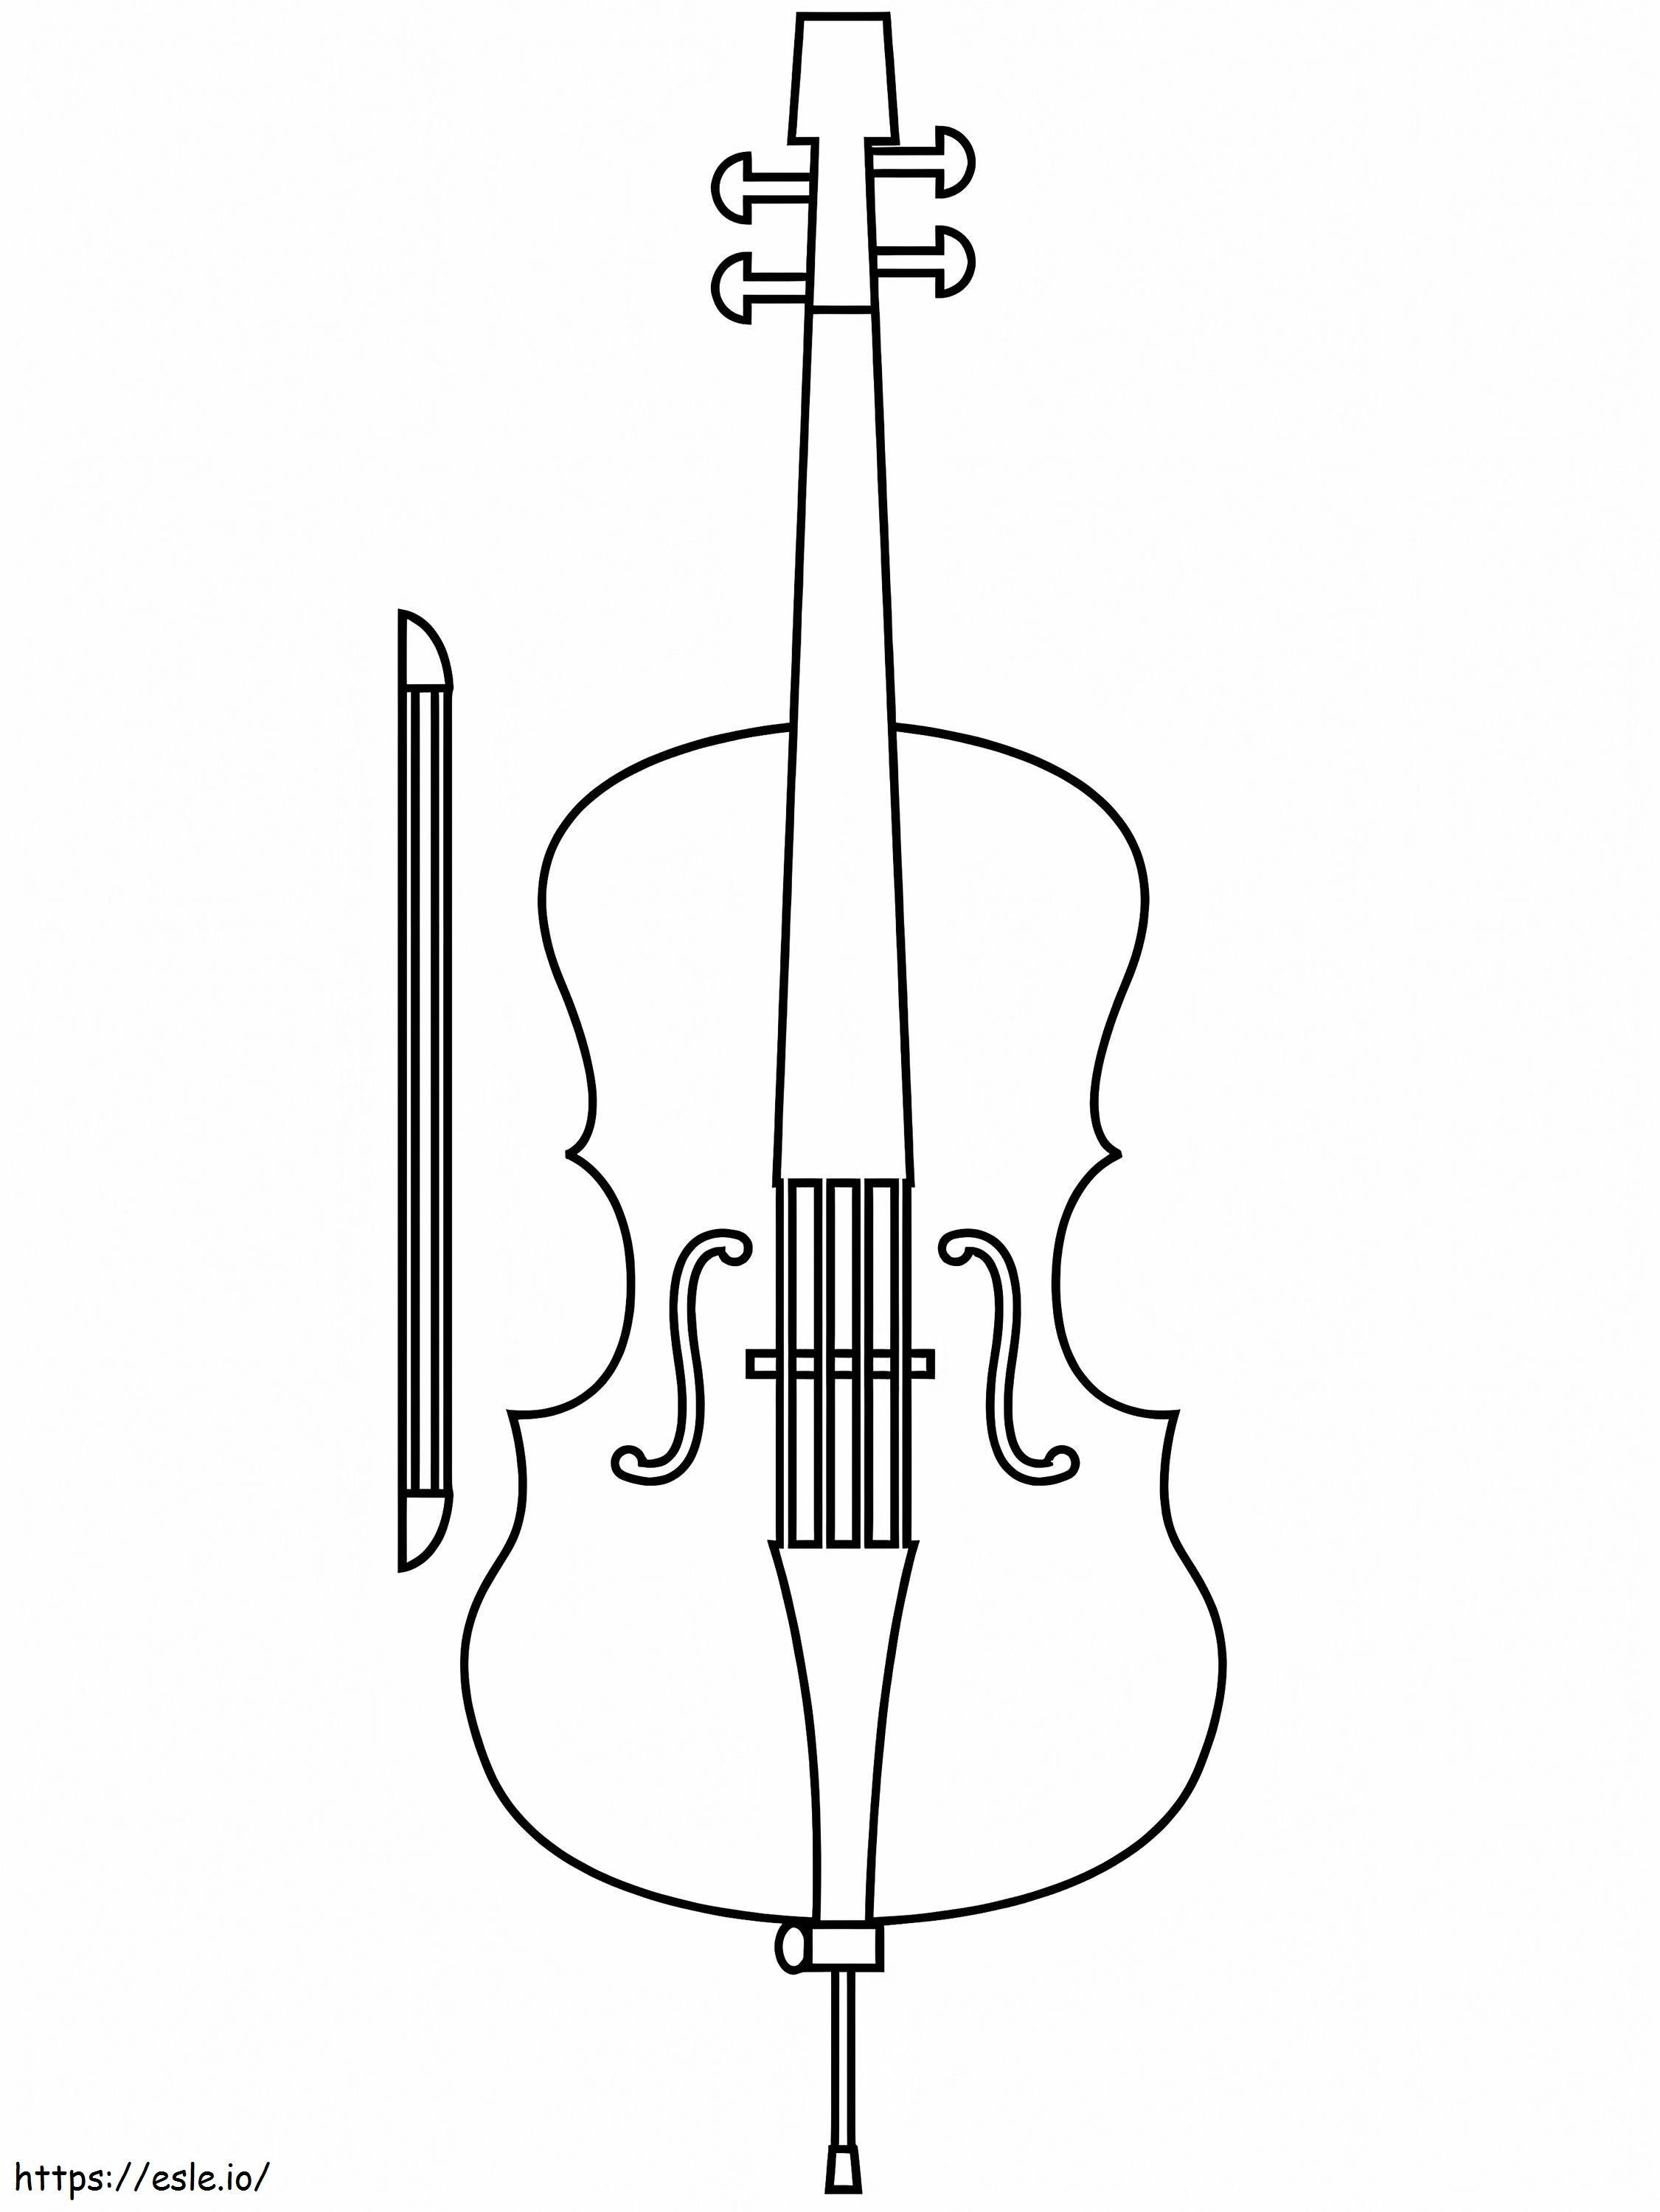 Kostenloses druckbares Cello ausmalbilder